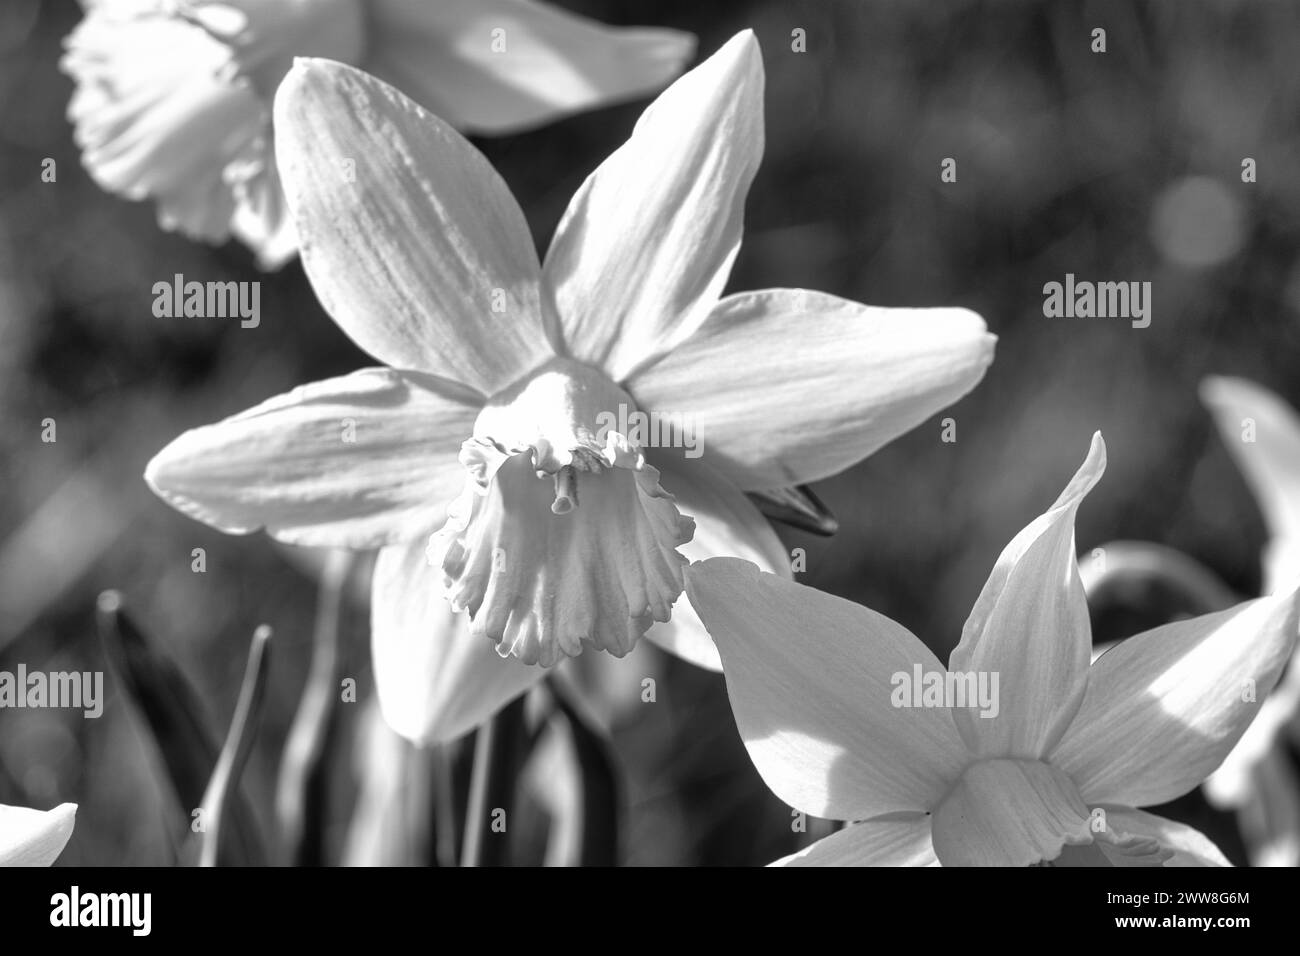 Jonquilles dans un pré noir et blanc à Pâques. Les fleurs brillent. Les premières floraisons qui annoncent l'arrivée du printemps. Plantes photographiques Banque D'Images